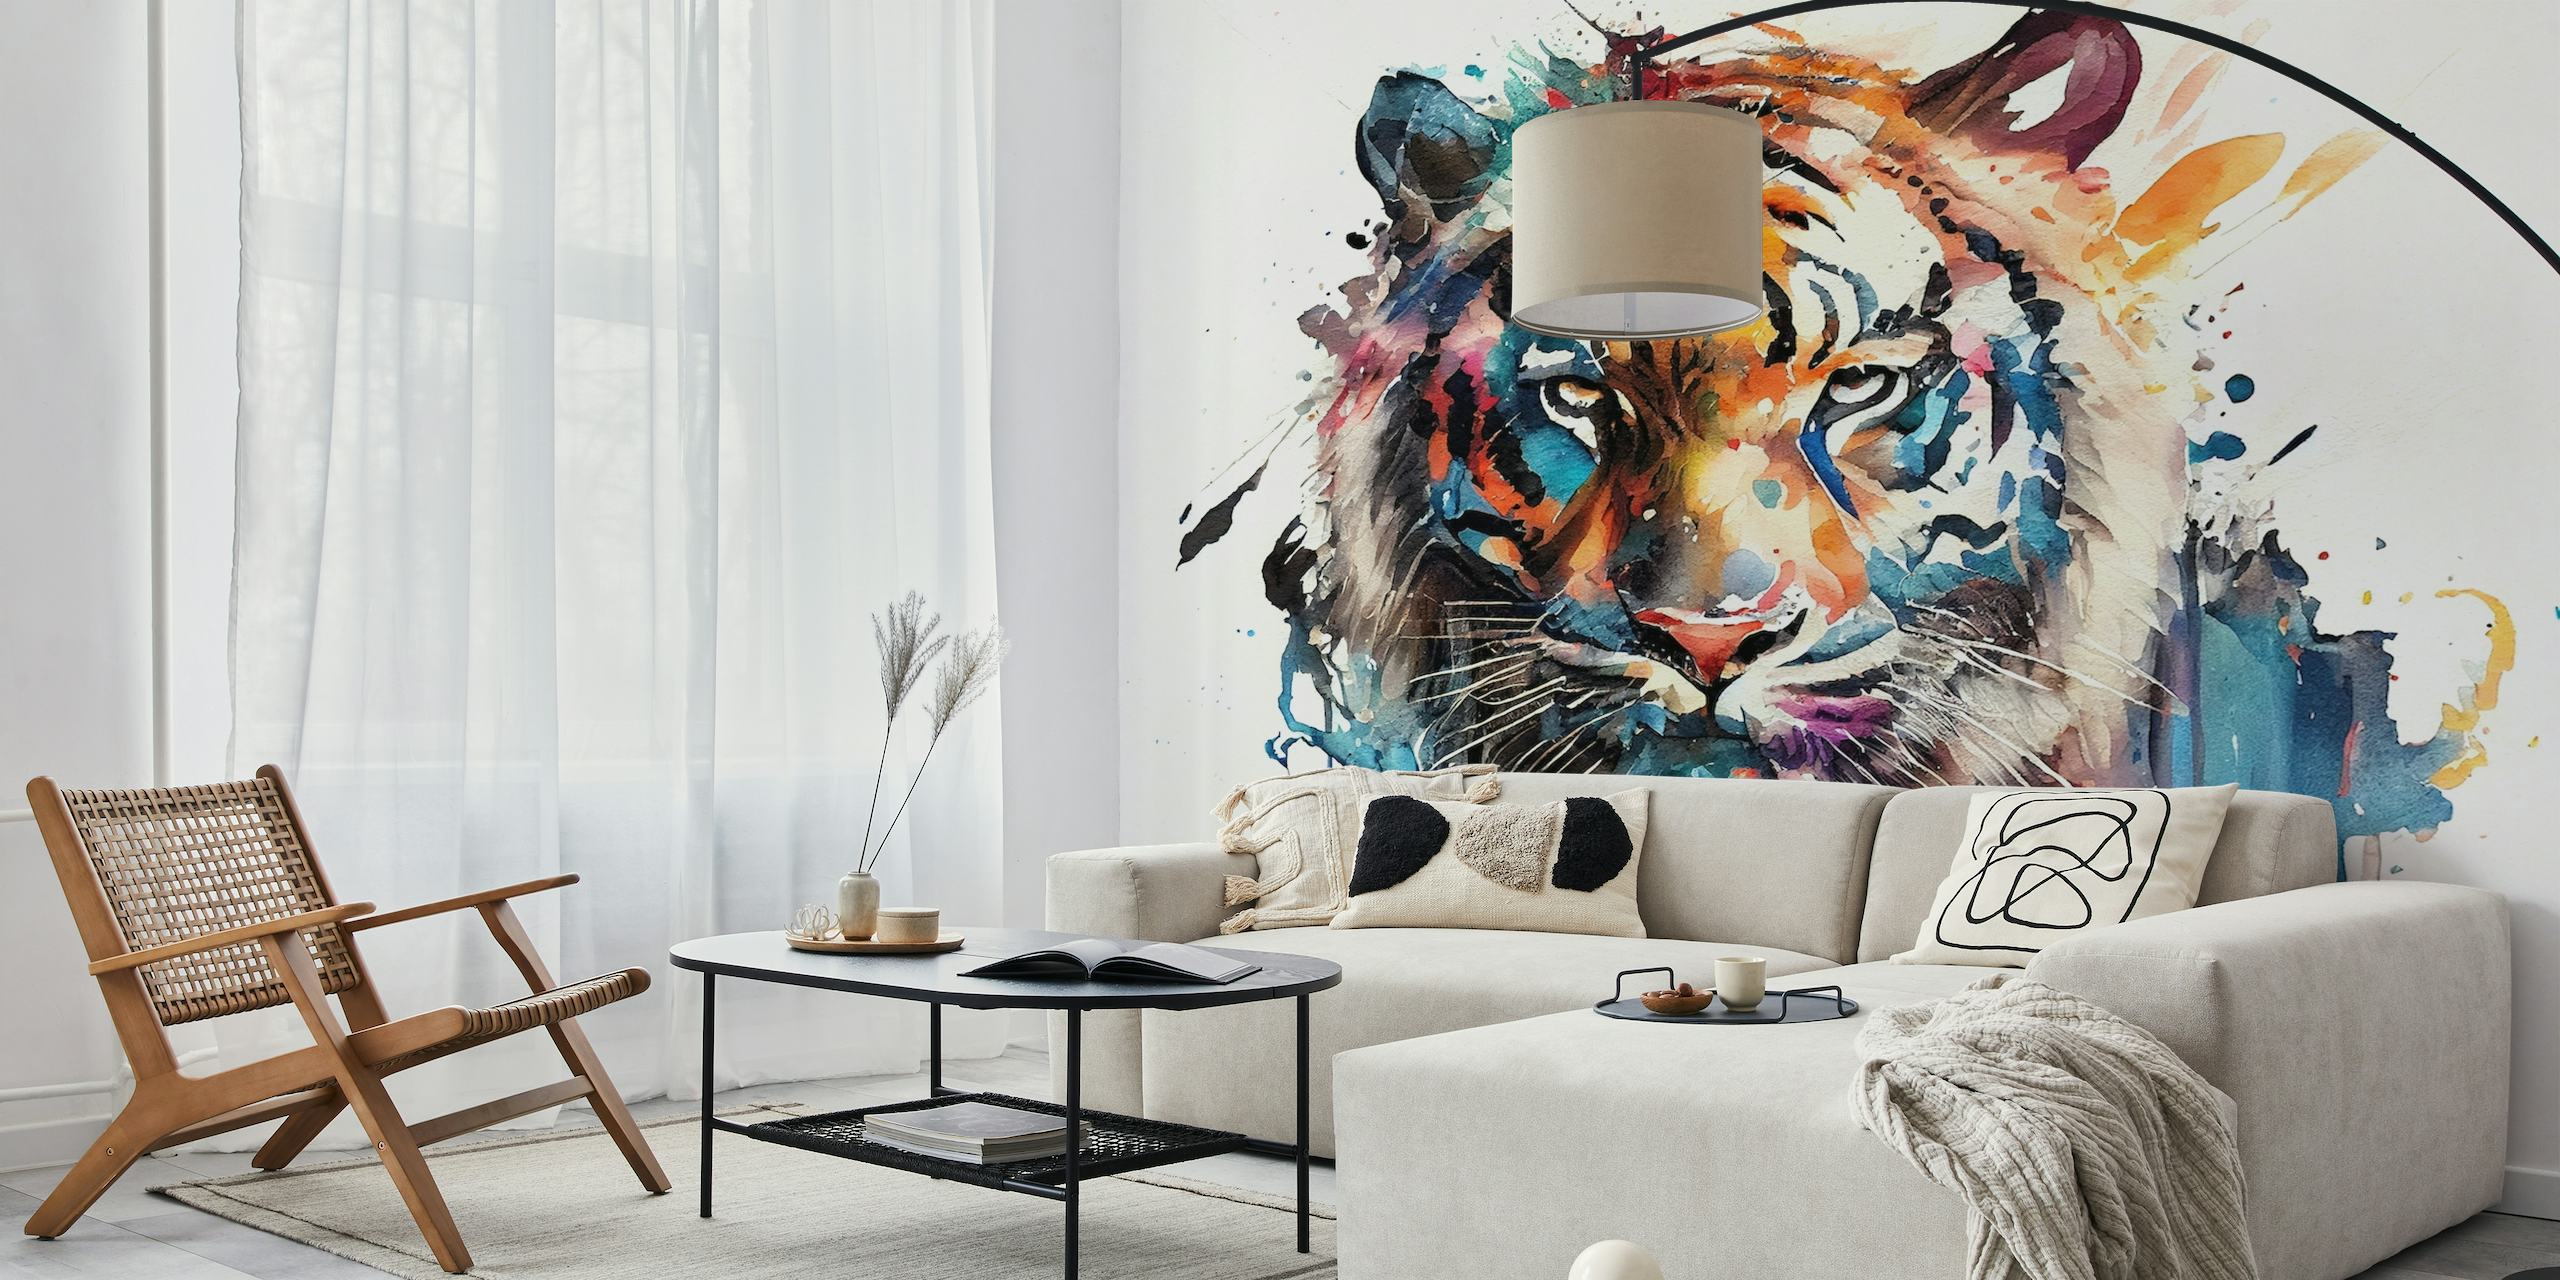 Een aquarelschilderij van een tijger met een mix van levendige kleuren tegen een witte achtergrond, omgezet in een muurschildering.